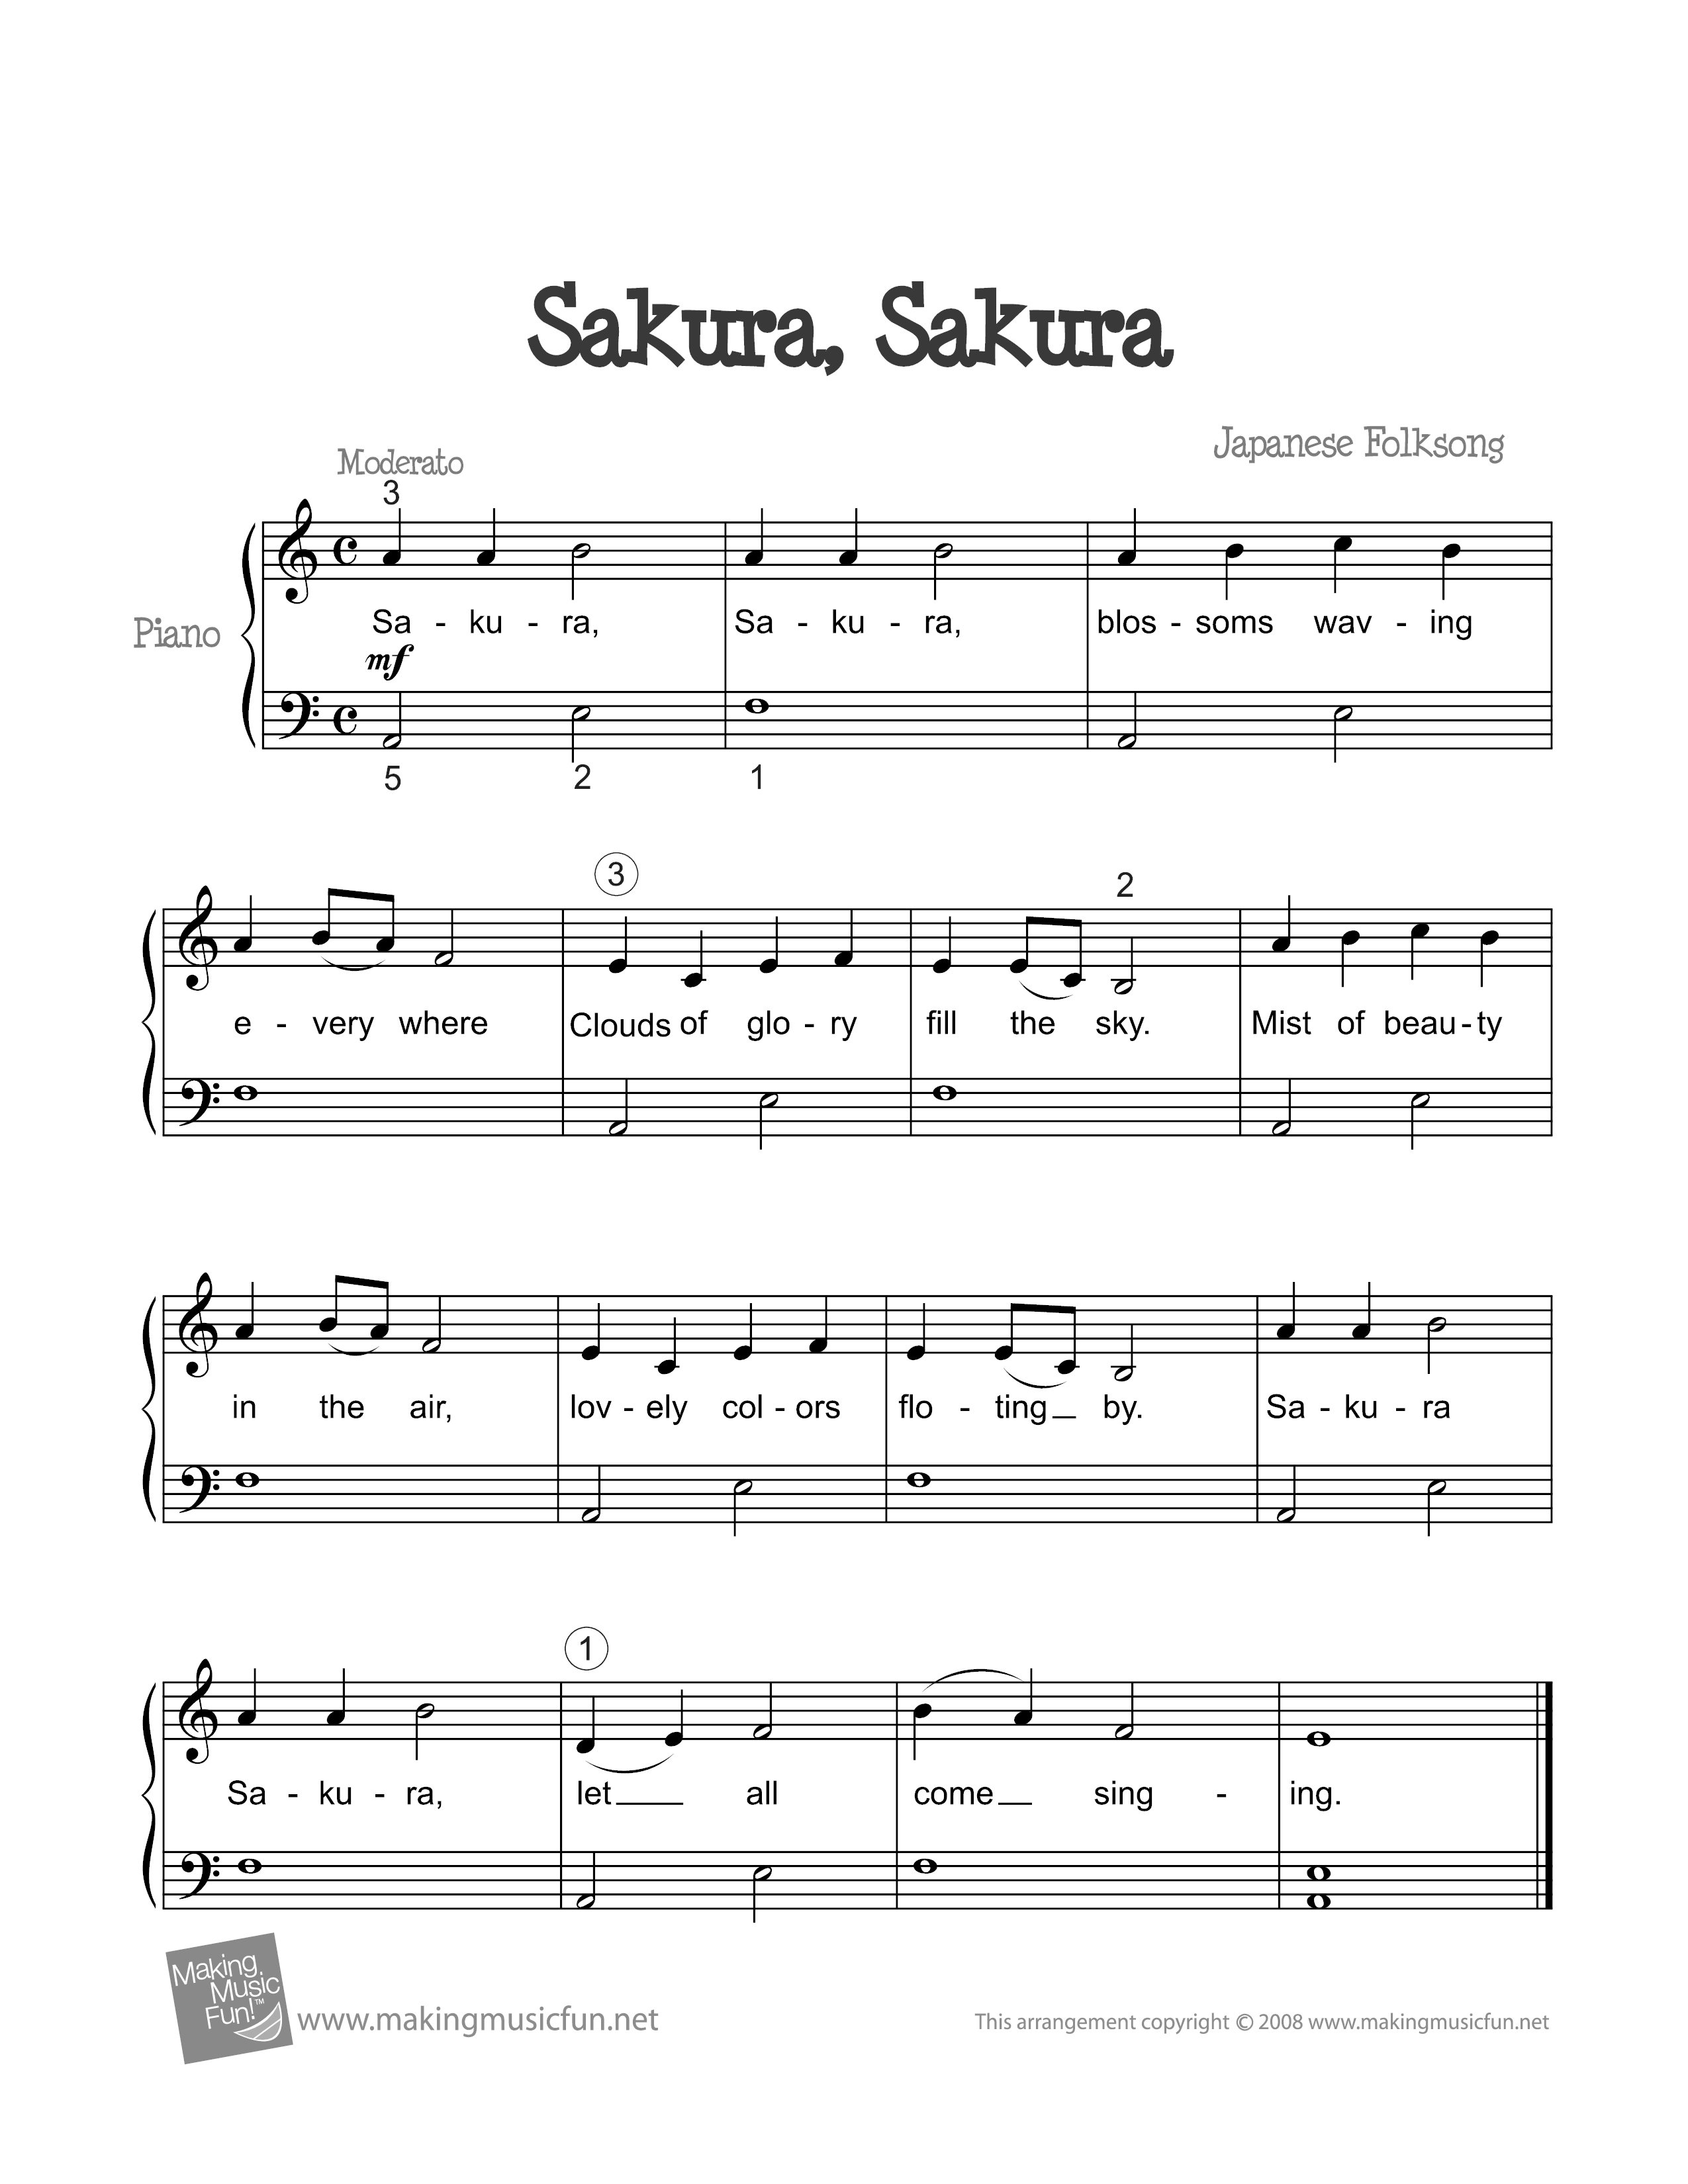 Sakura, Sakura Score